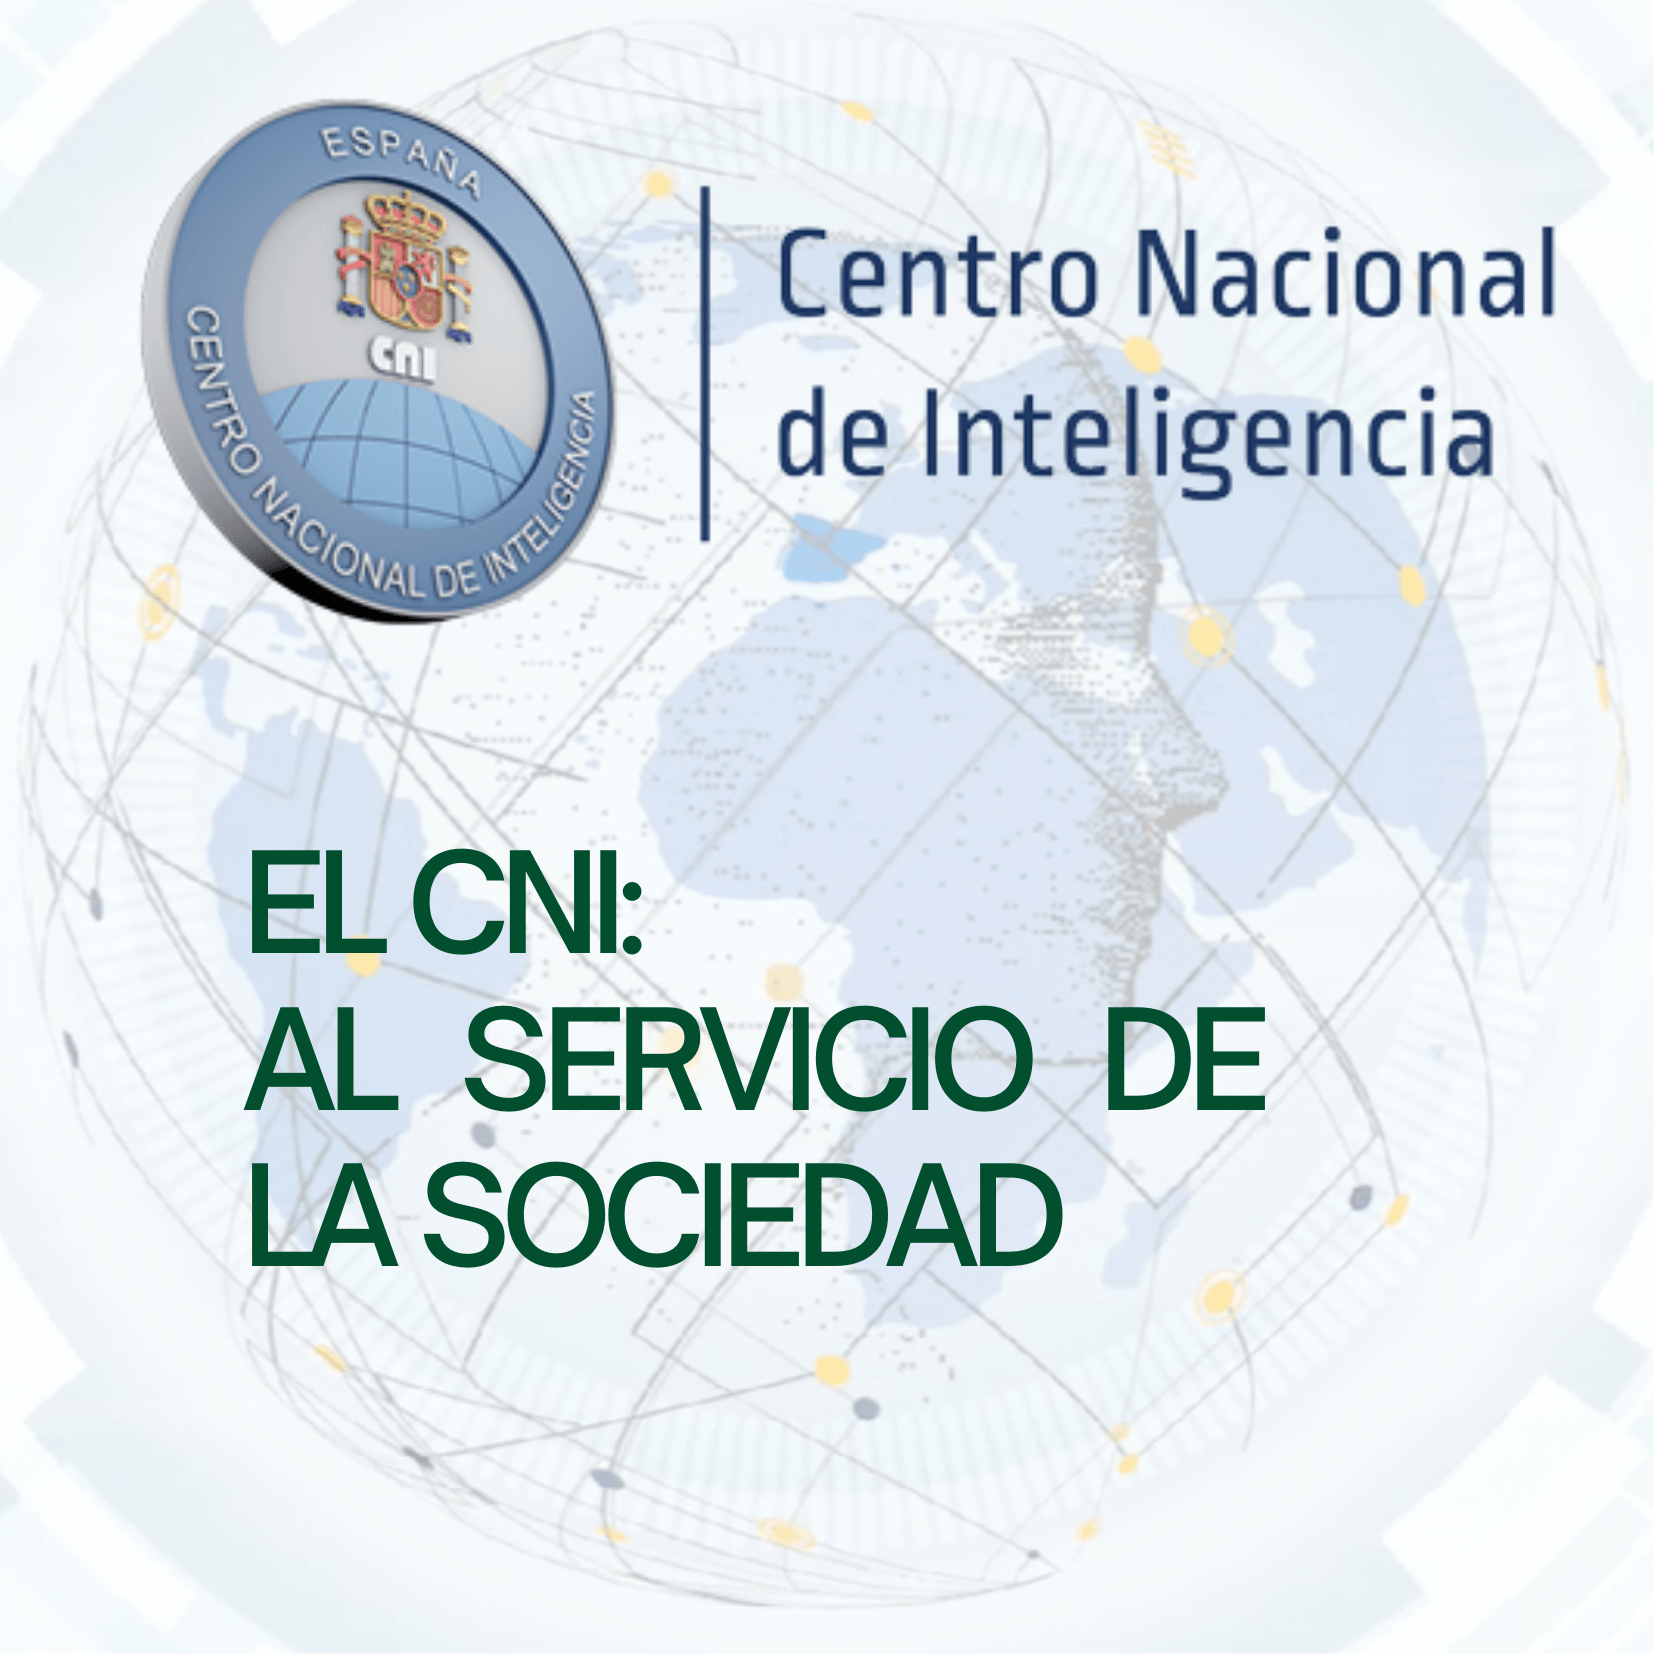 El CNI: Al servicio de la sociedad